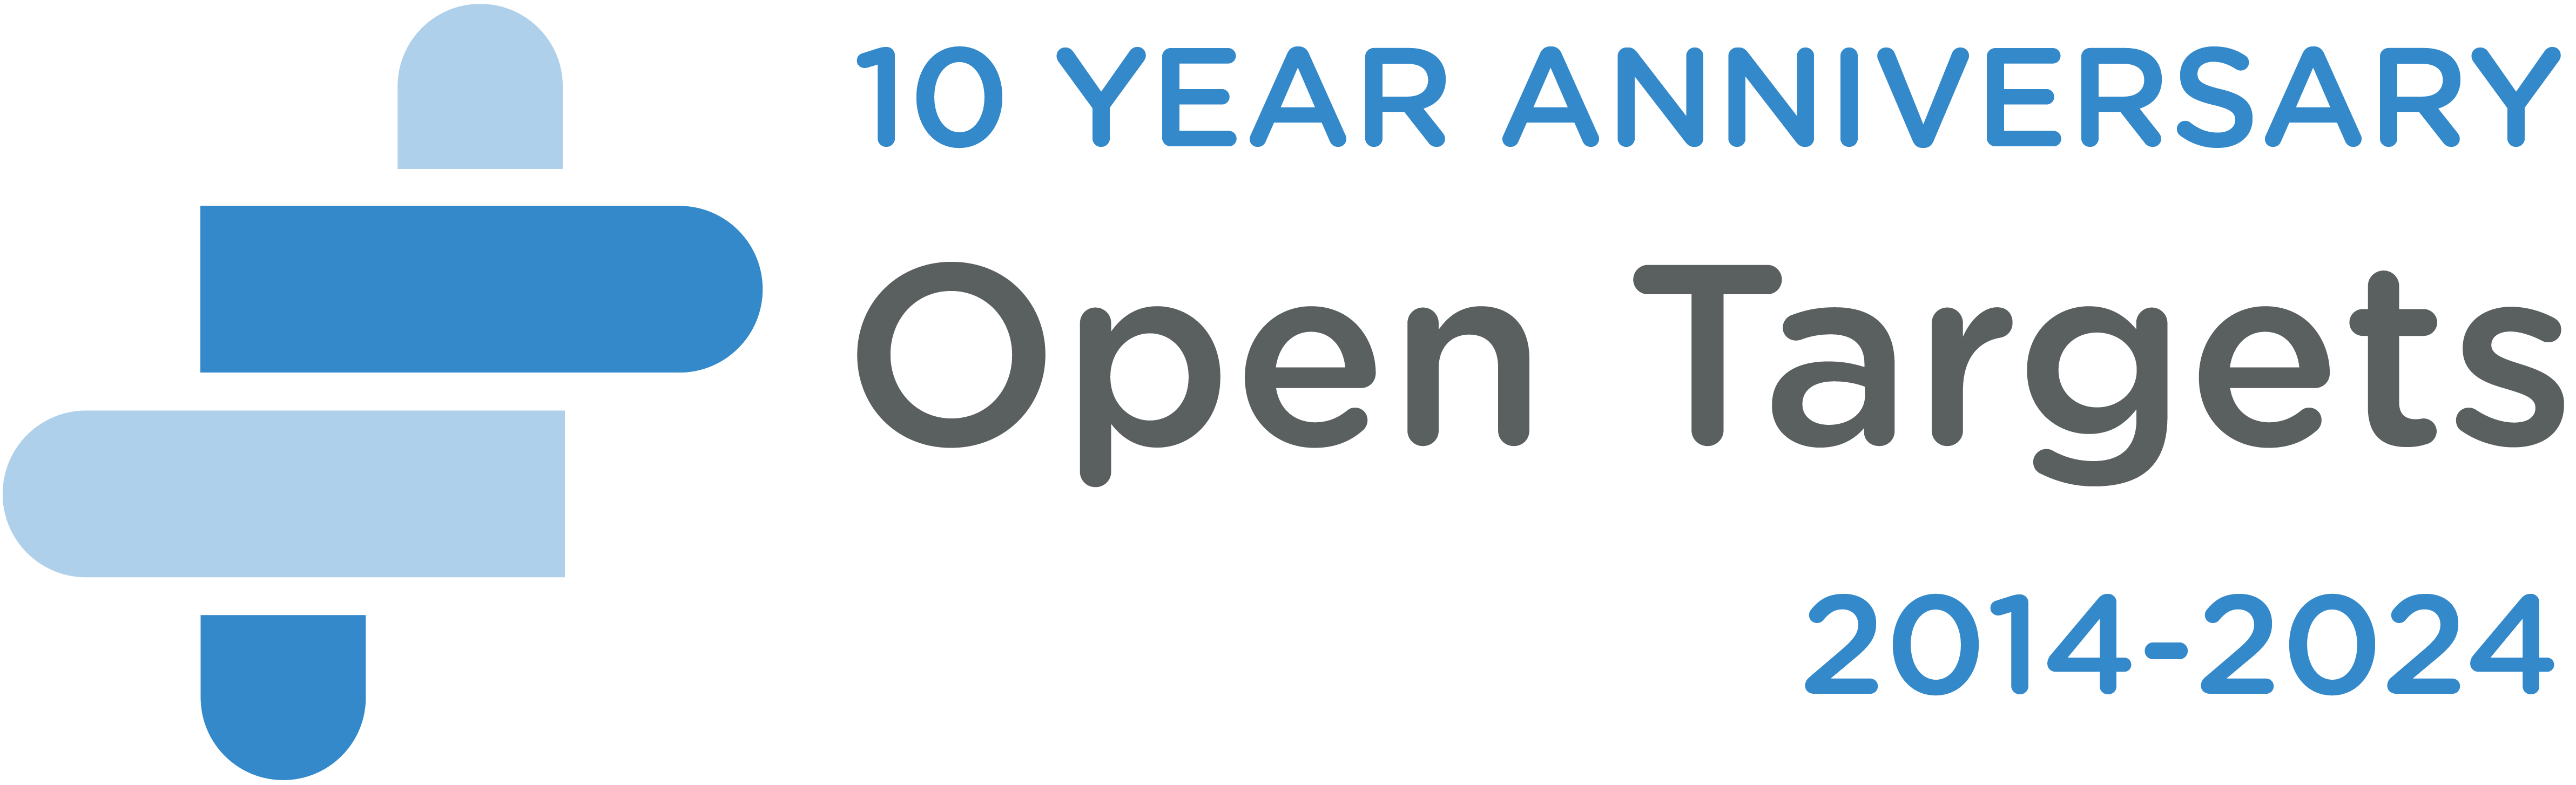 十周年纪念徽标、Open Targets螺旋徽标和文字标记